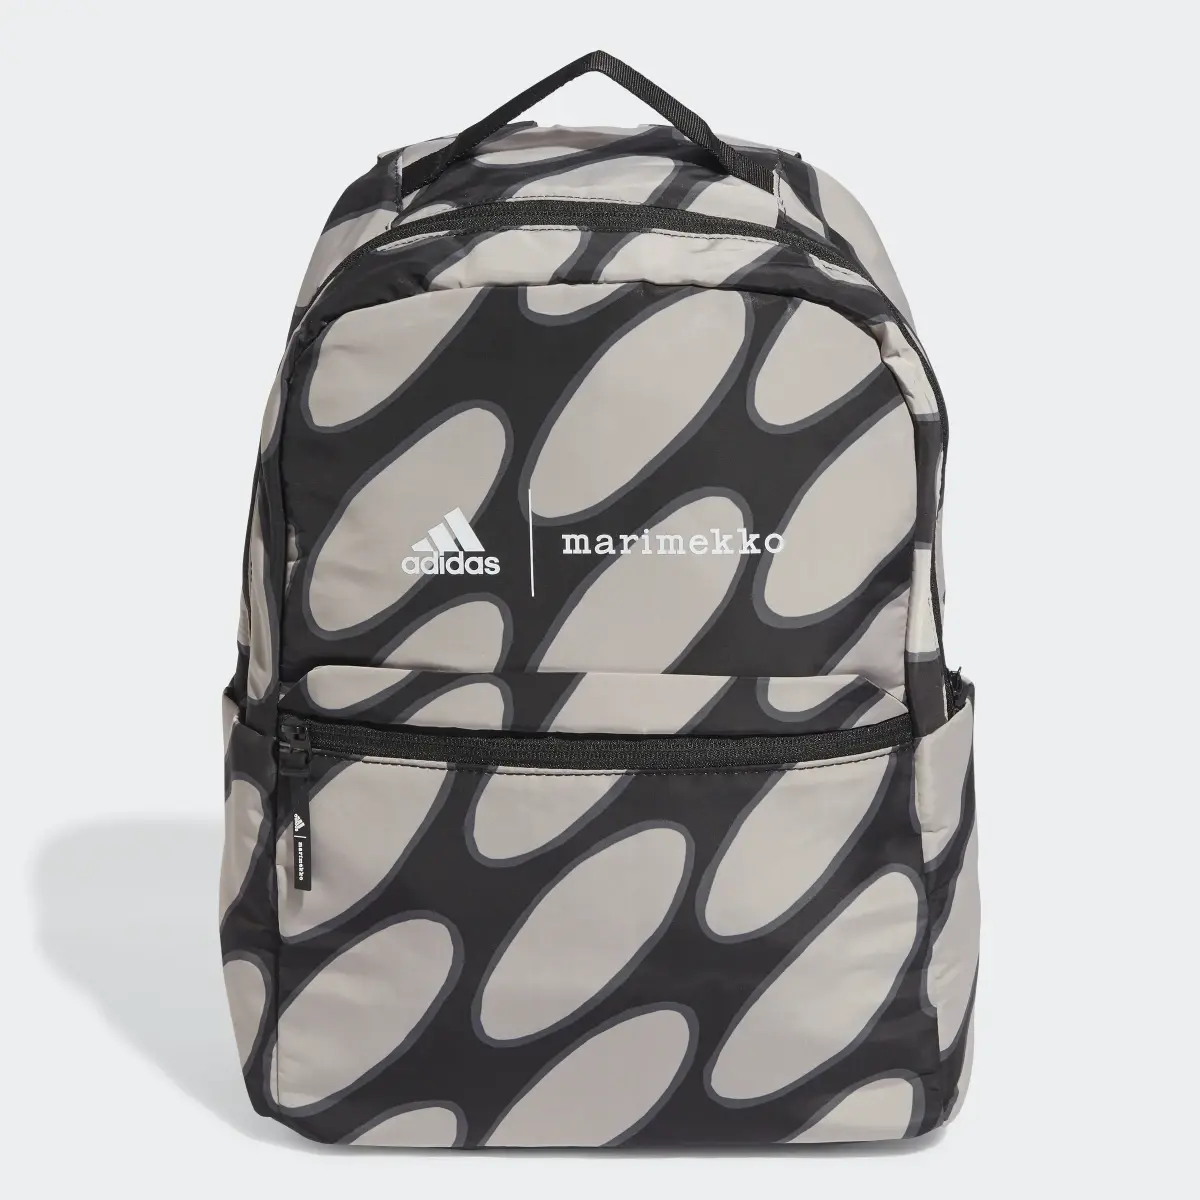 Adidas x Marimekko Designed to Move Training Backpack. 2